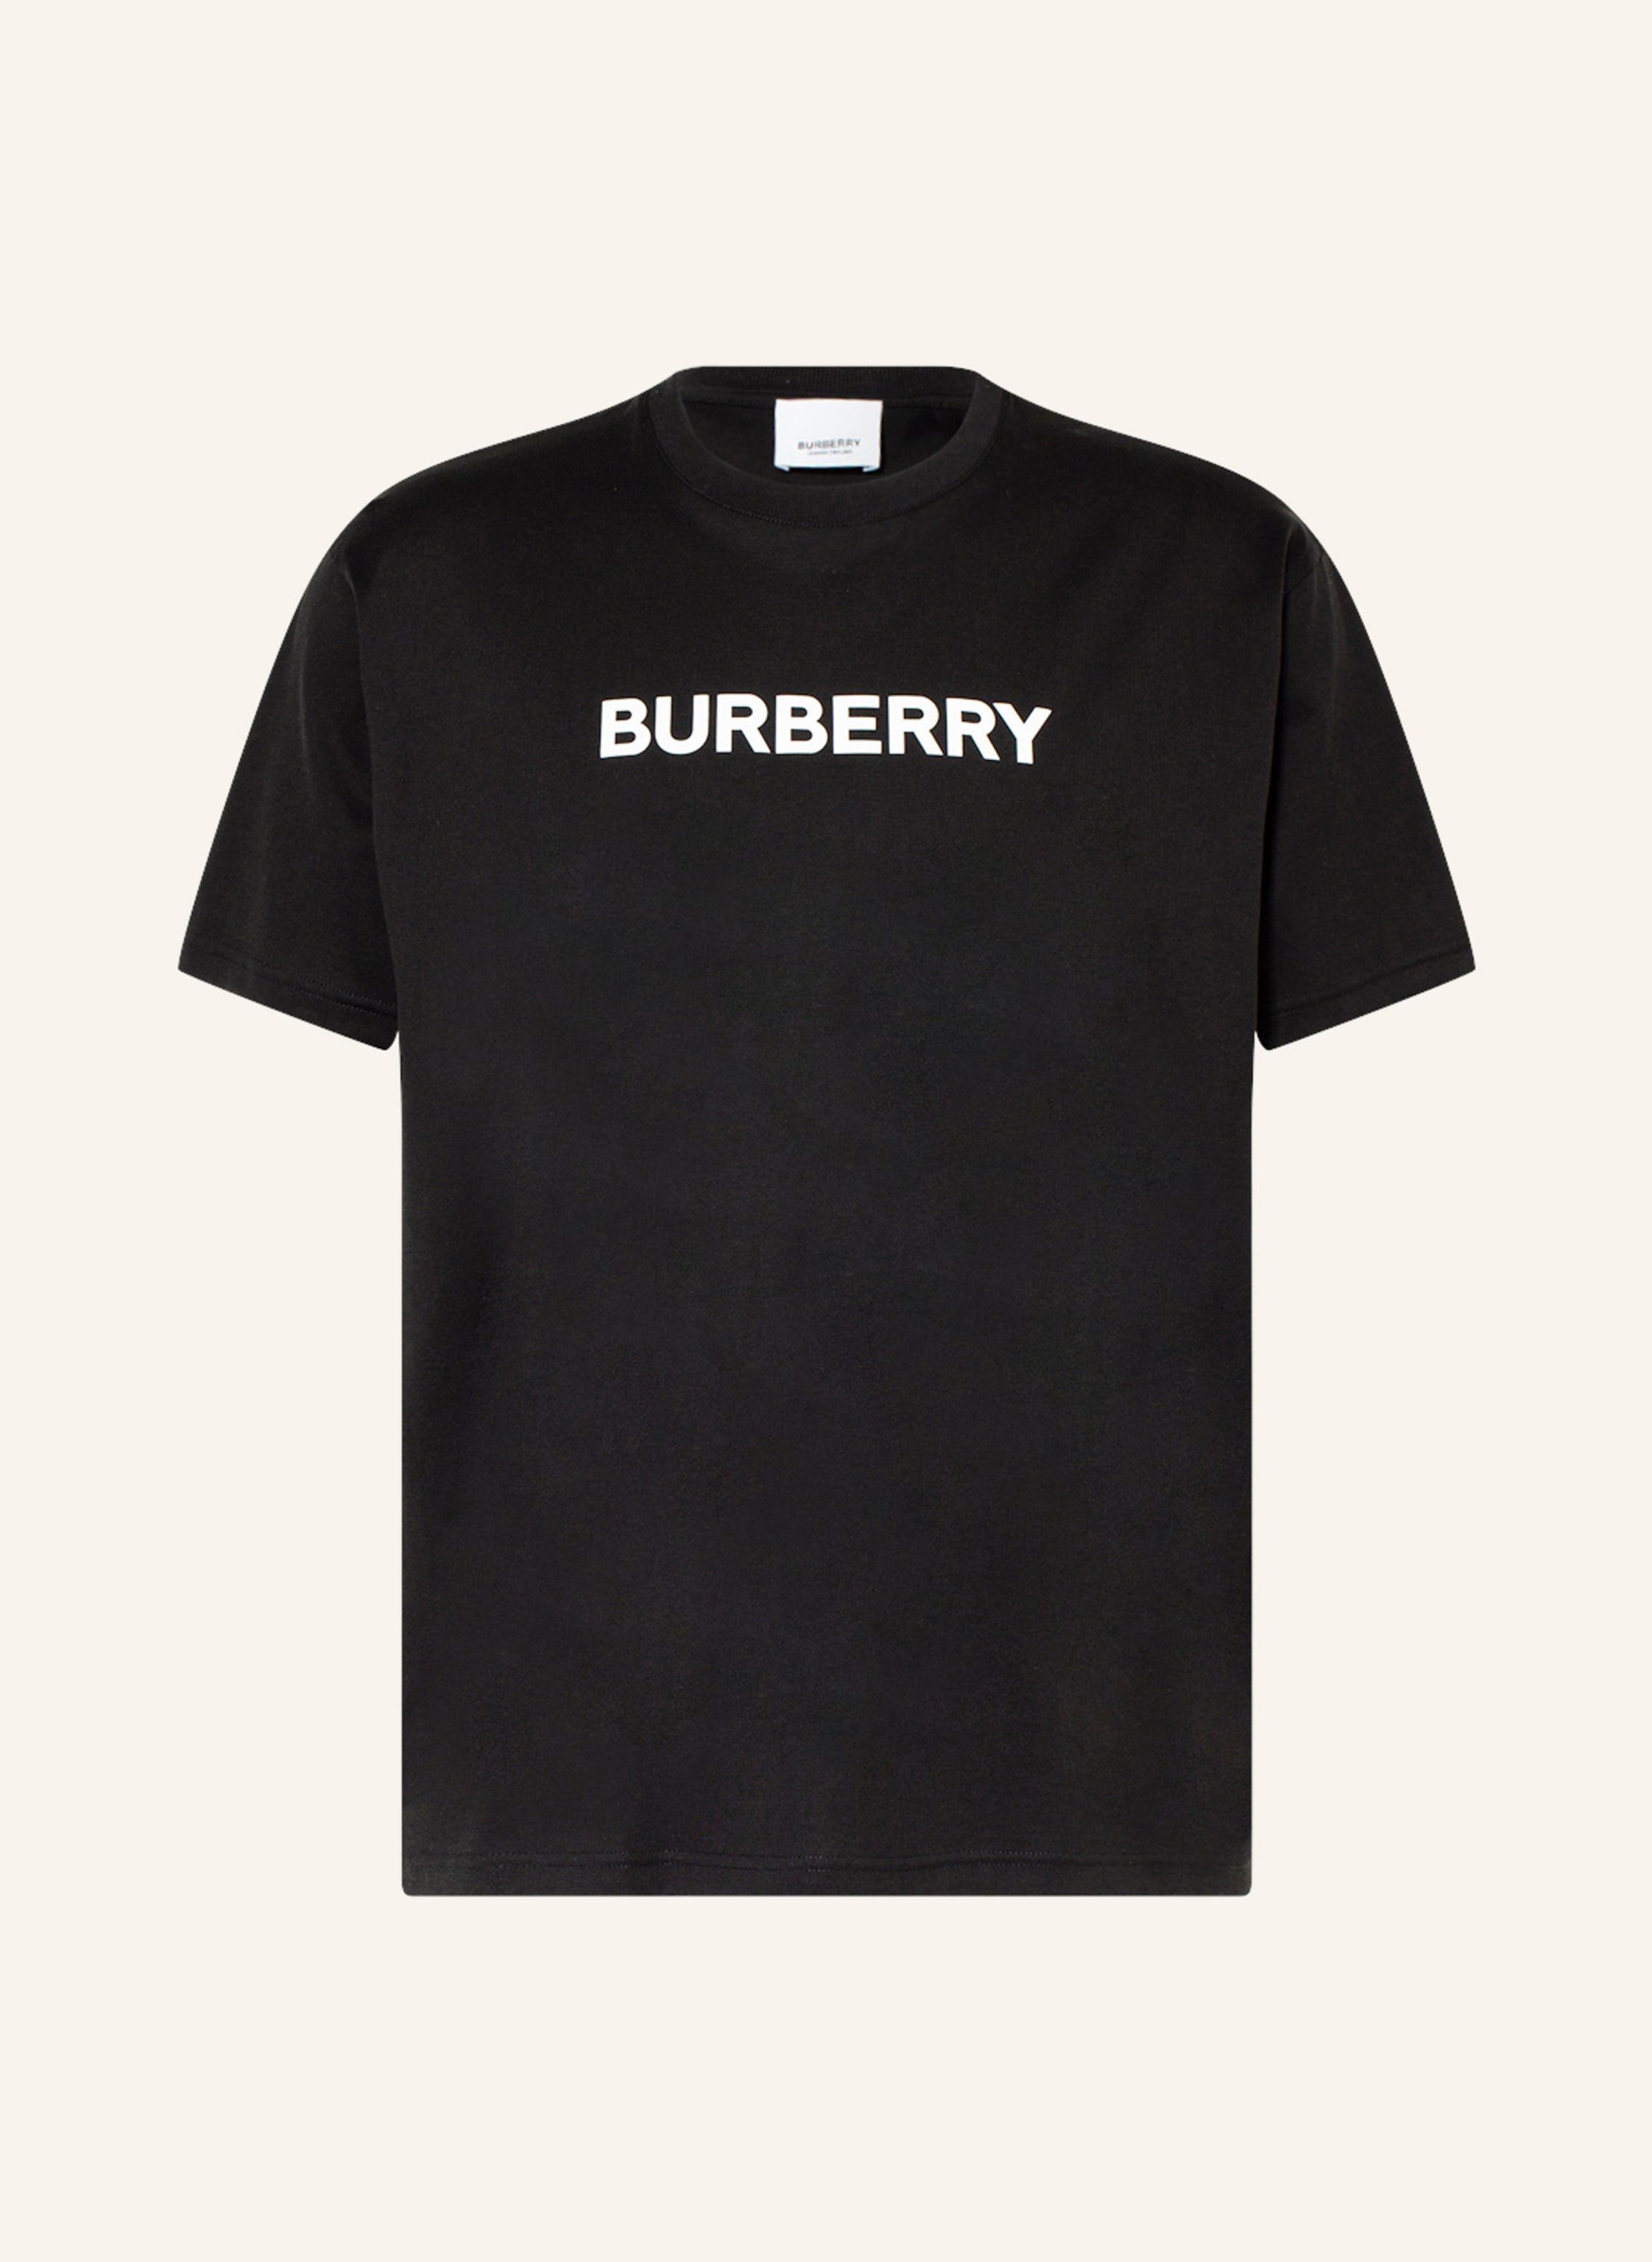 BURBERRY T-shirt HARRISTON in black | Breuninger